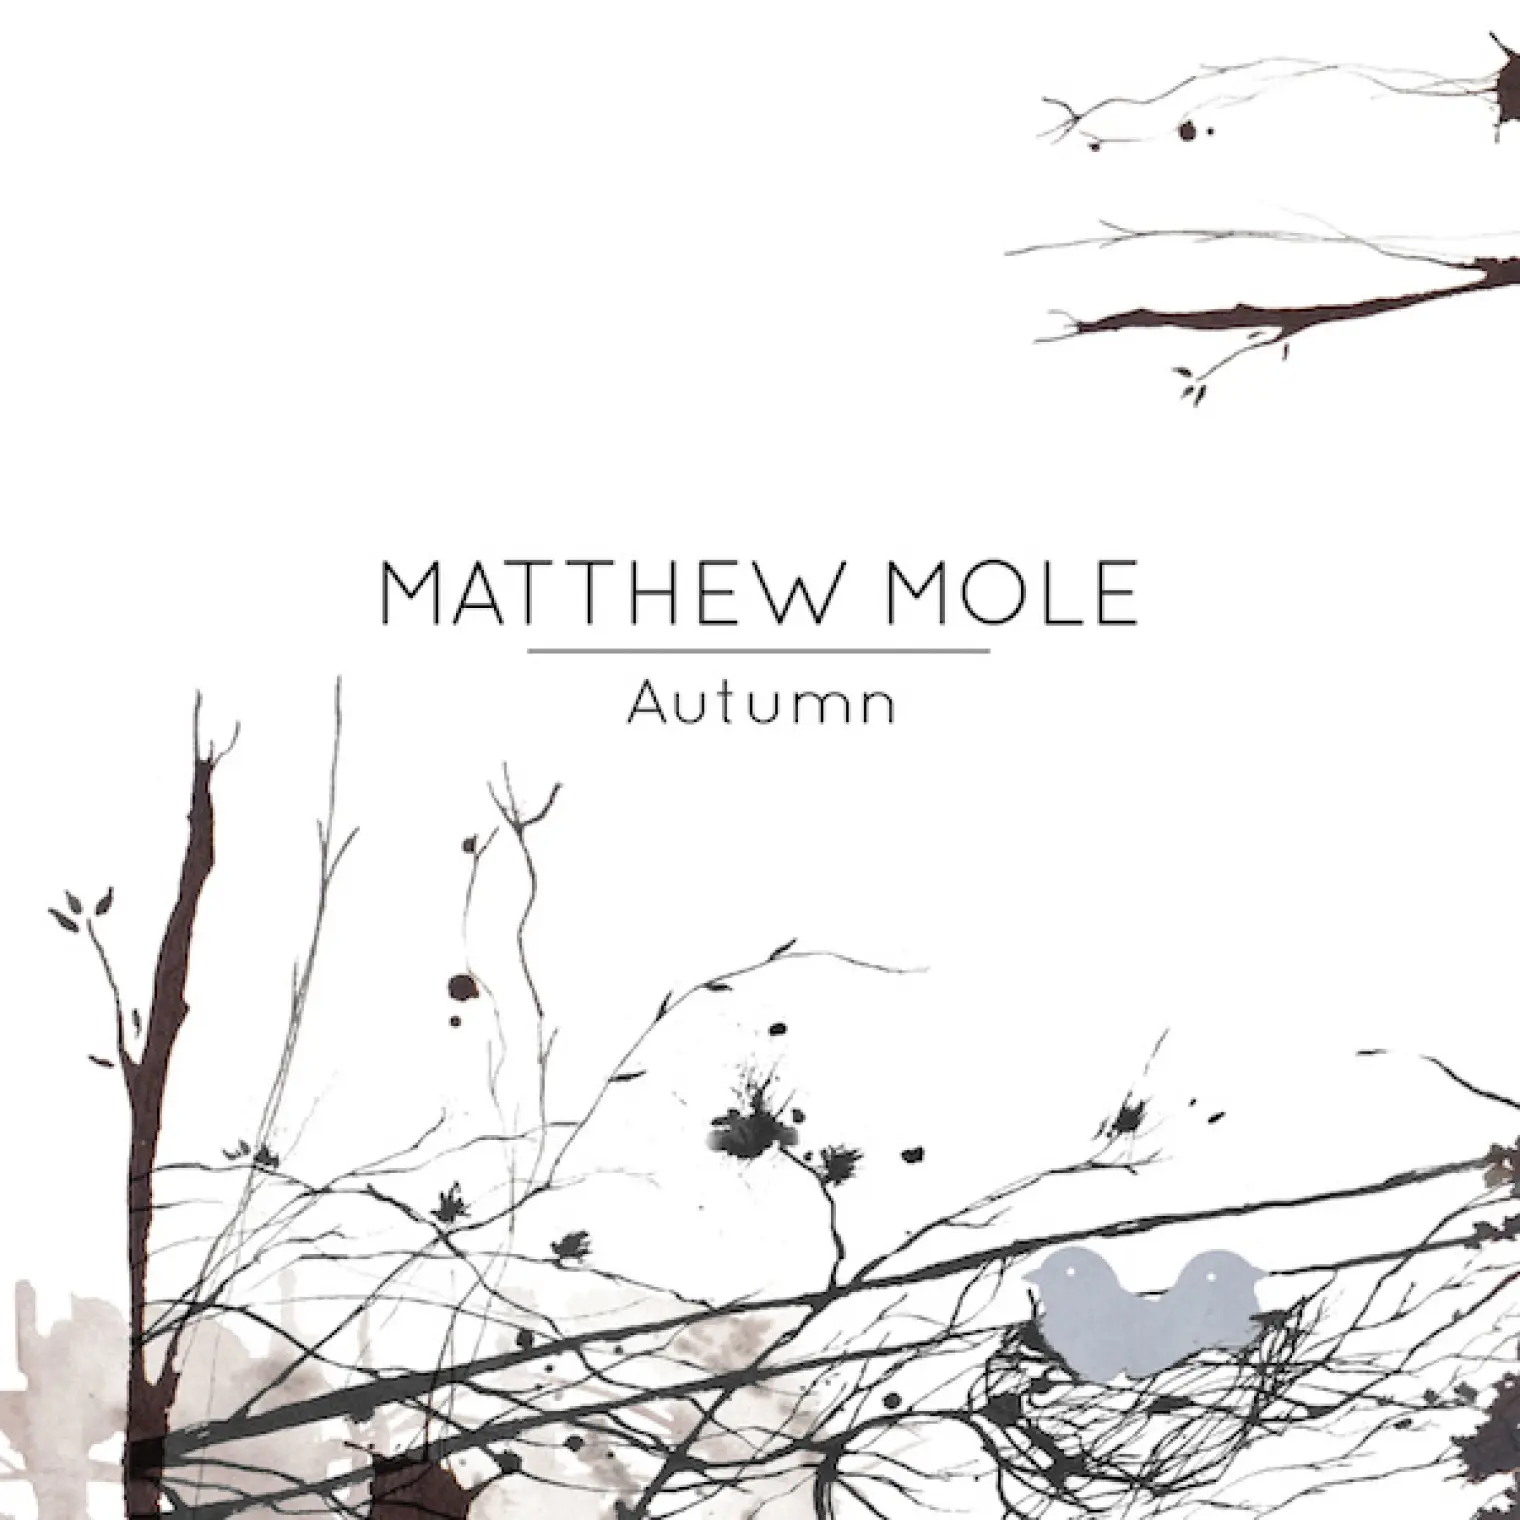 Autumn -  Matthew Mole 